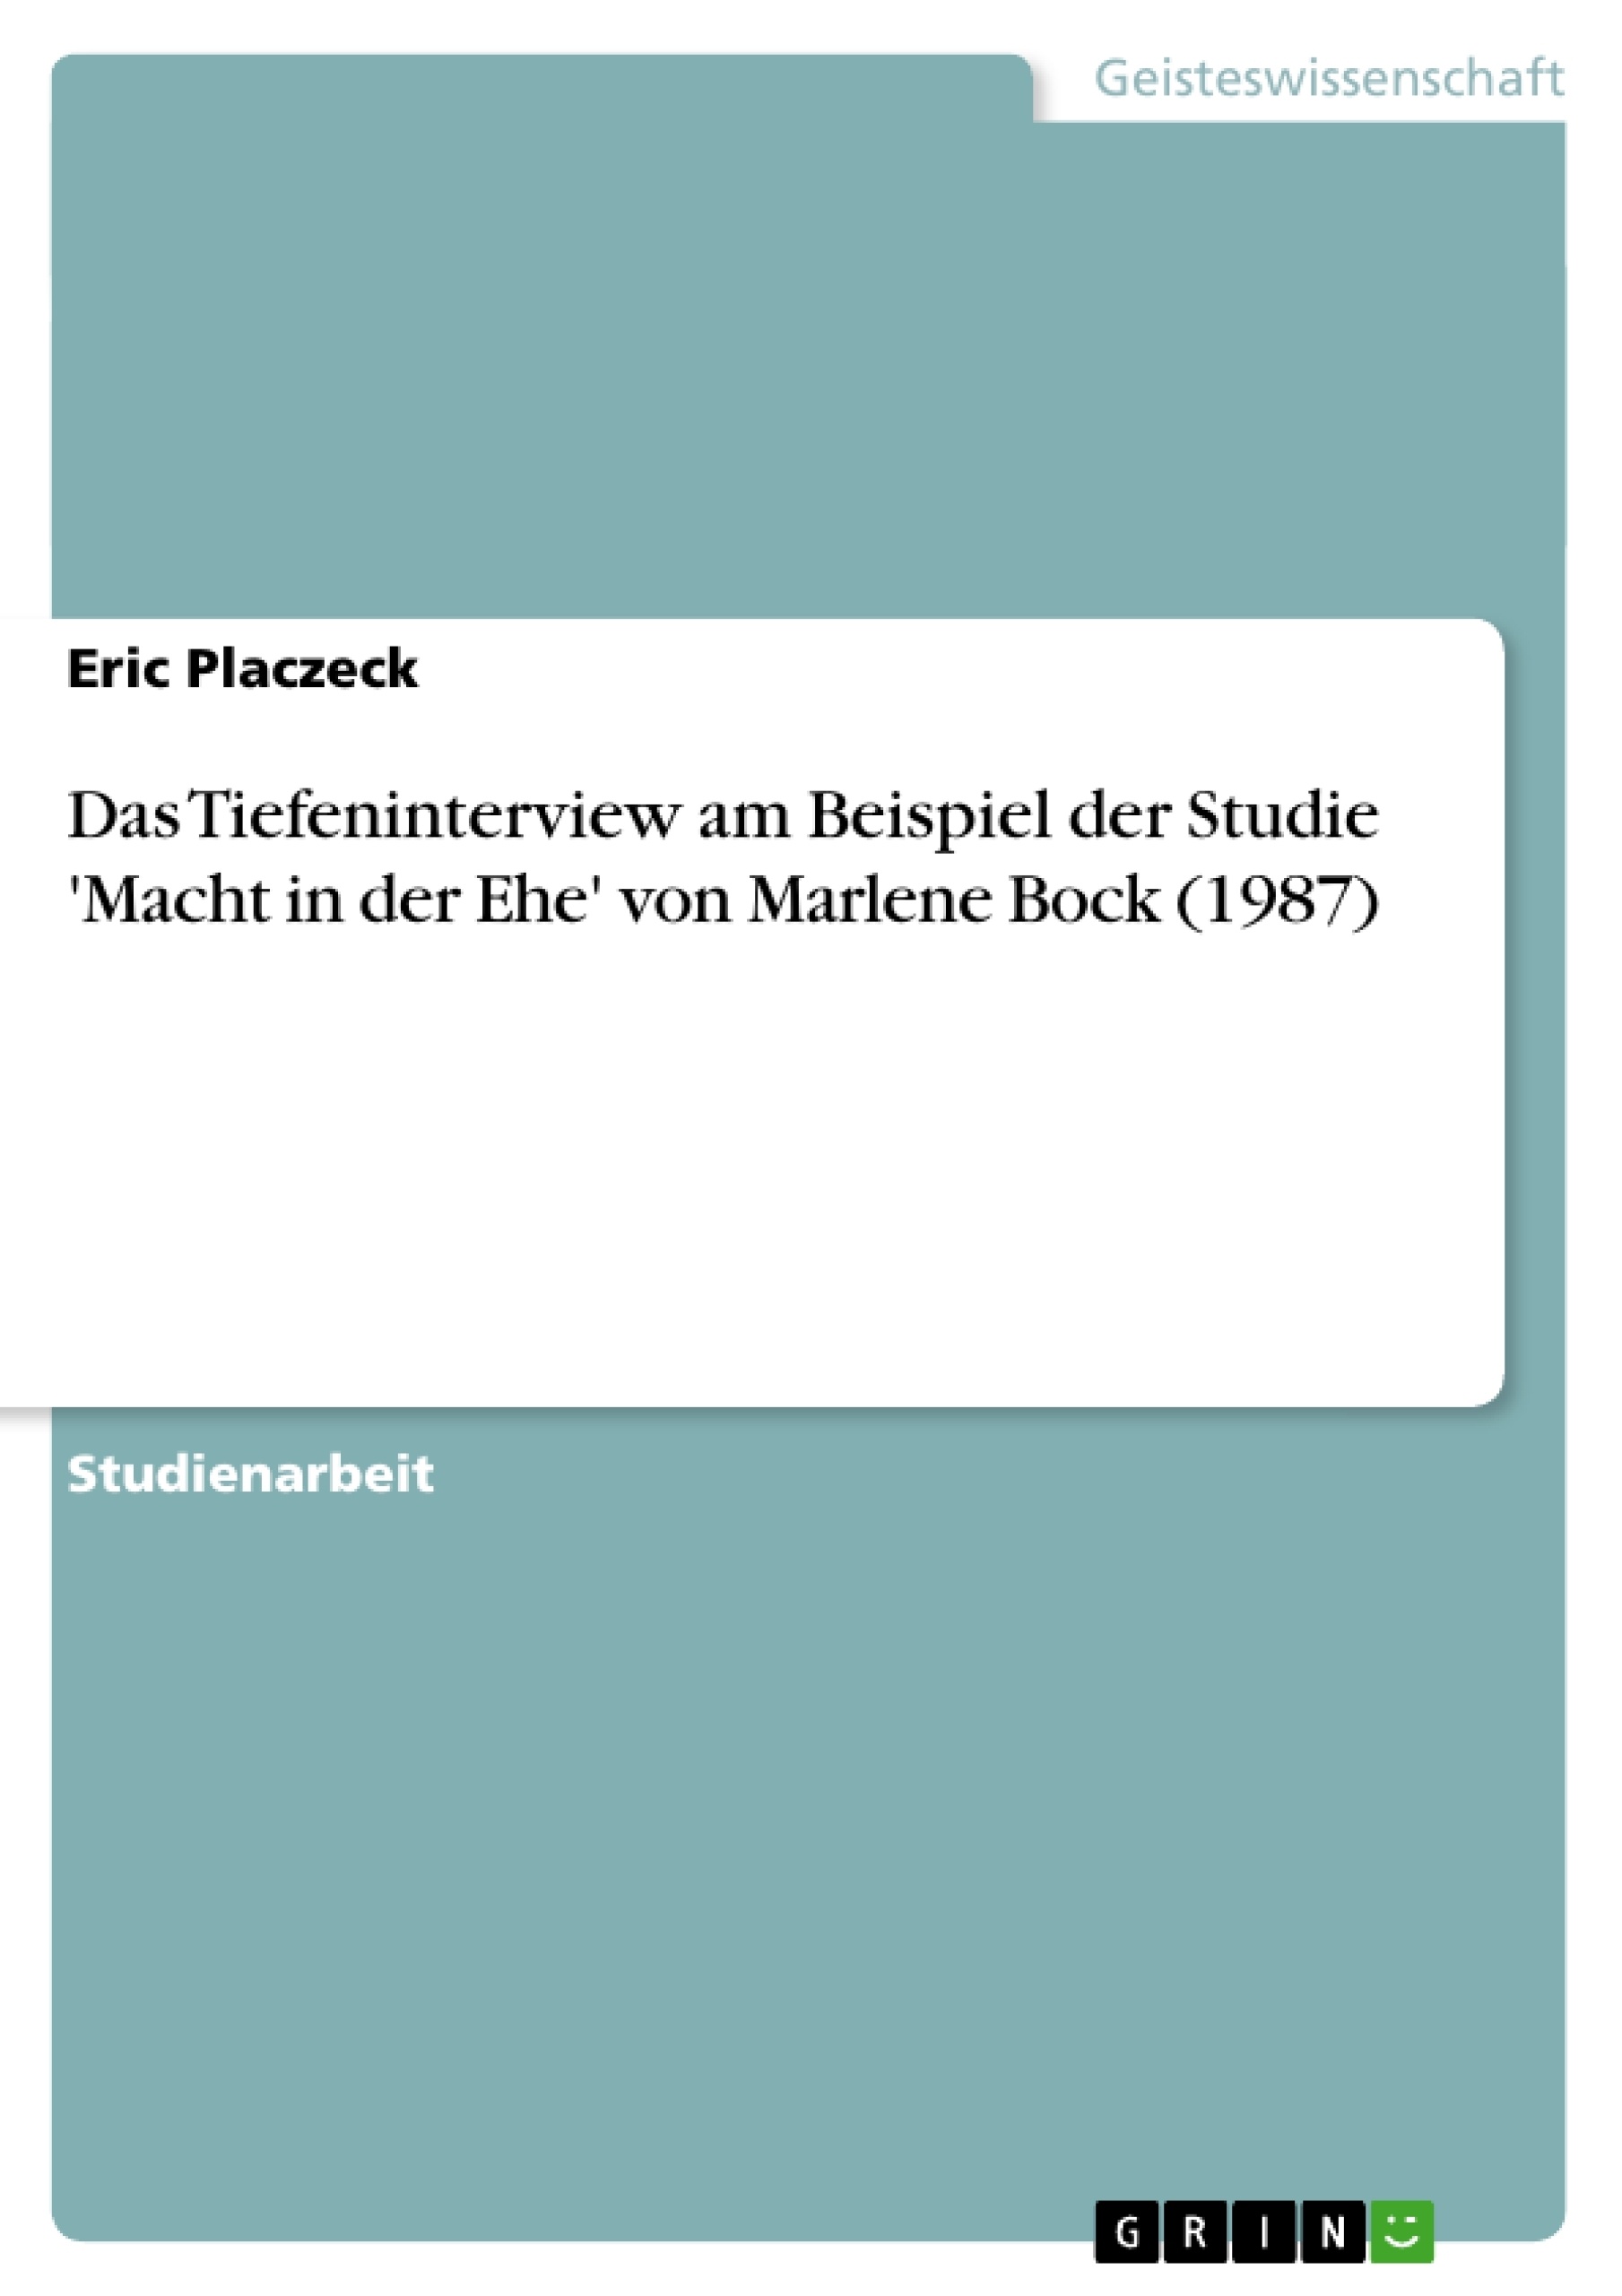 Título: Das Tiefeninterview am Beispiel der Studie 'Macht in der Ehe' von Marlene Bock (1987)